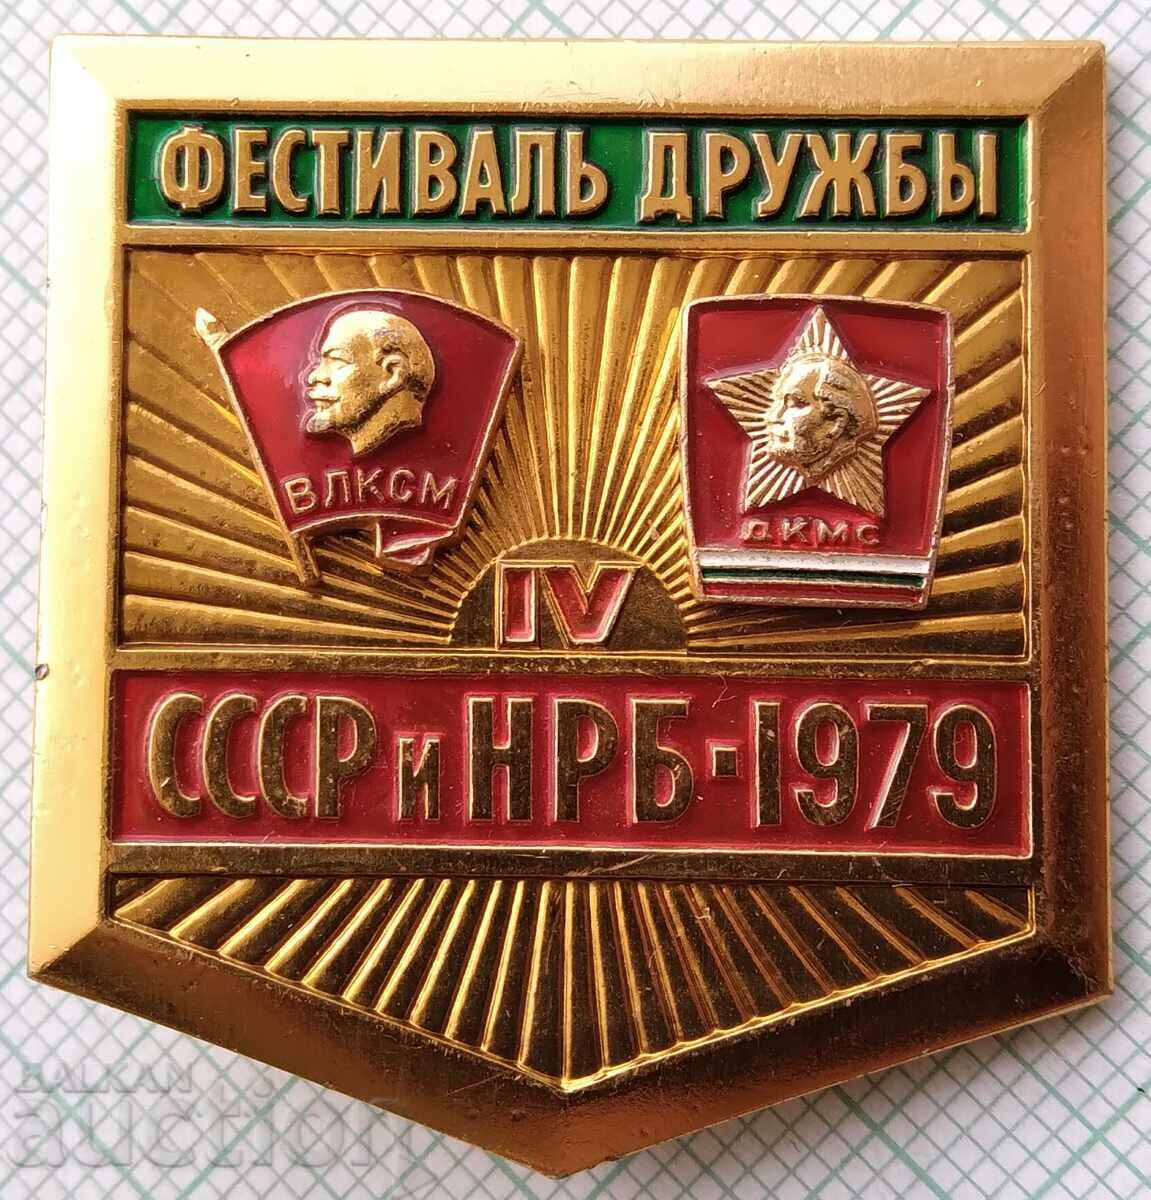 15972 Friendship Festival - VLKSM DKMS - USSR and NRB 1979